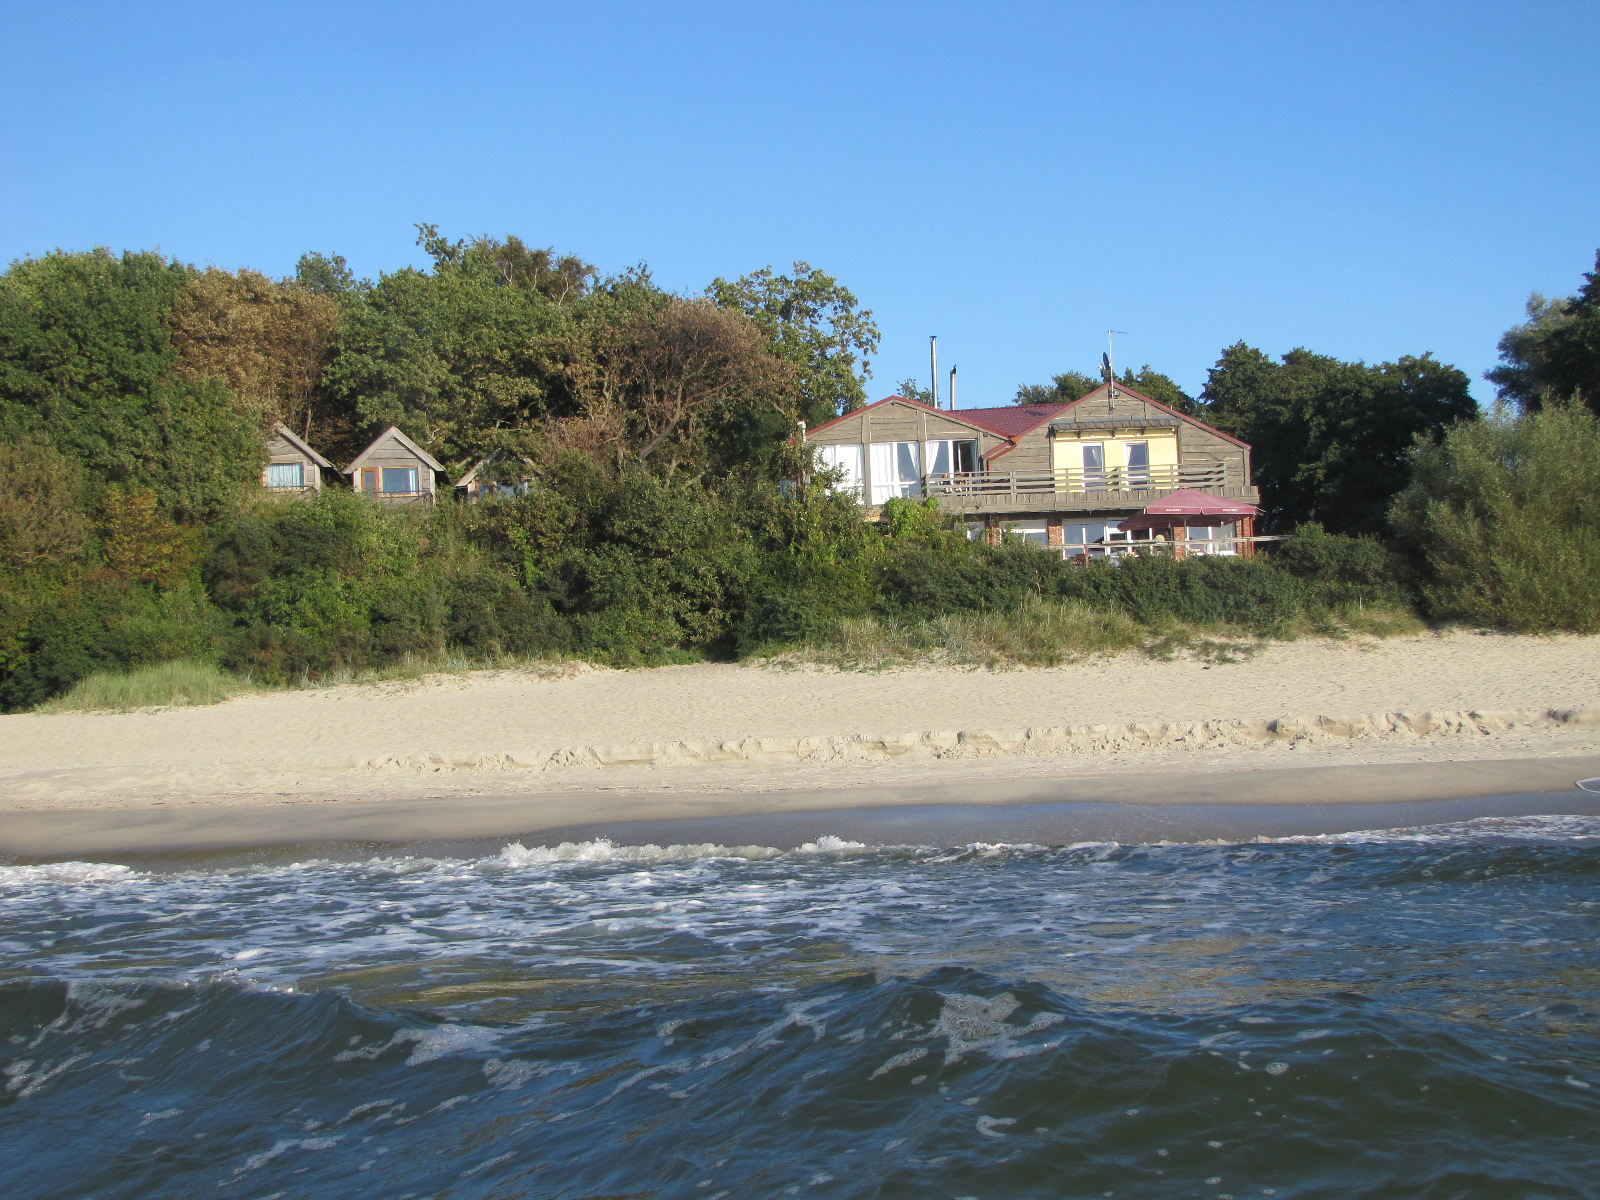 Foto von Vitland beach befindet sich in natürlicher umgebung